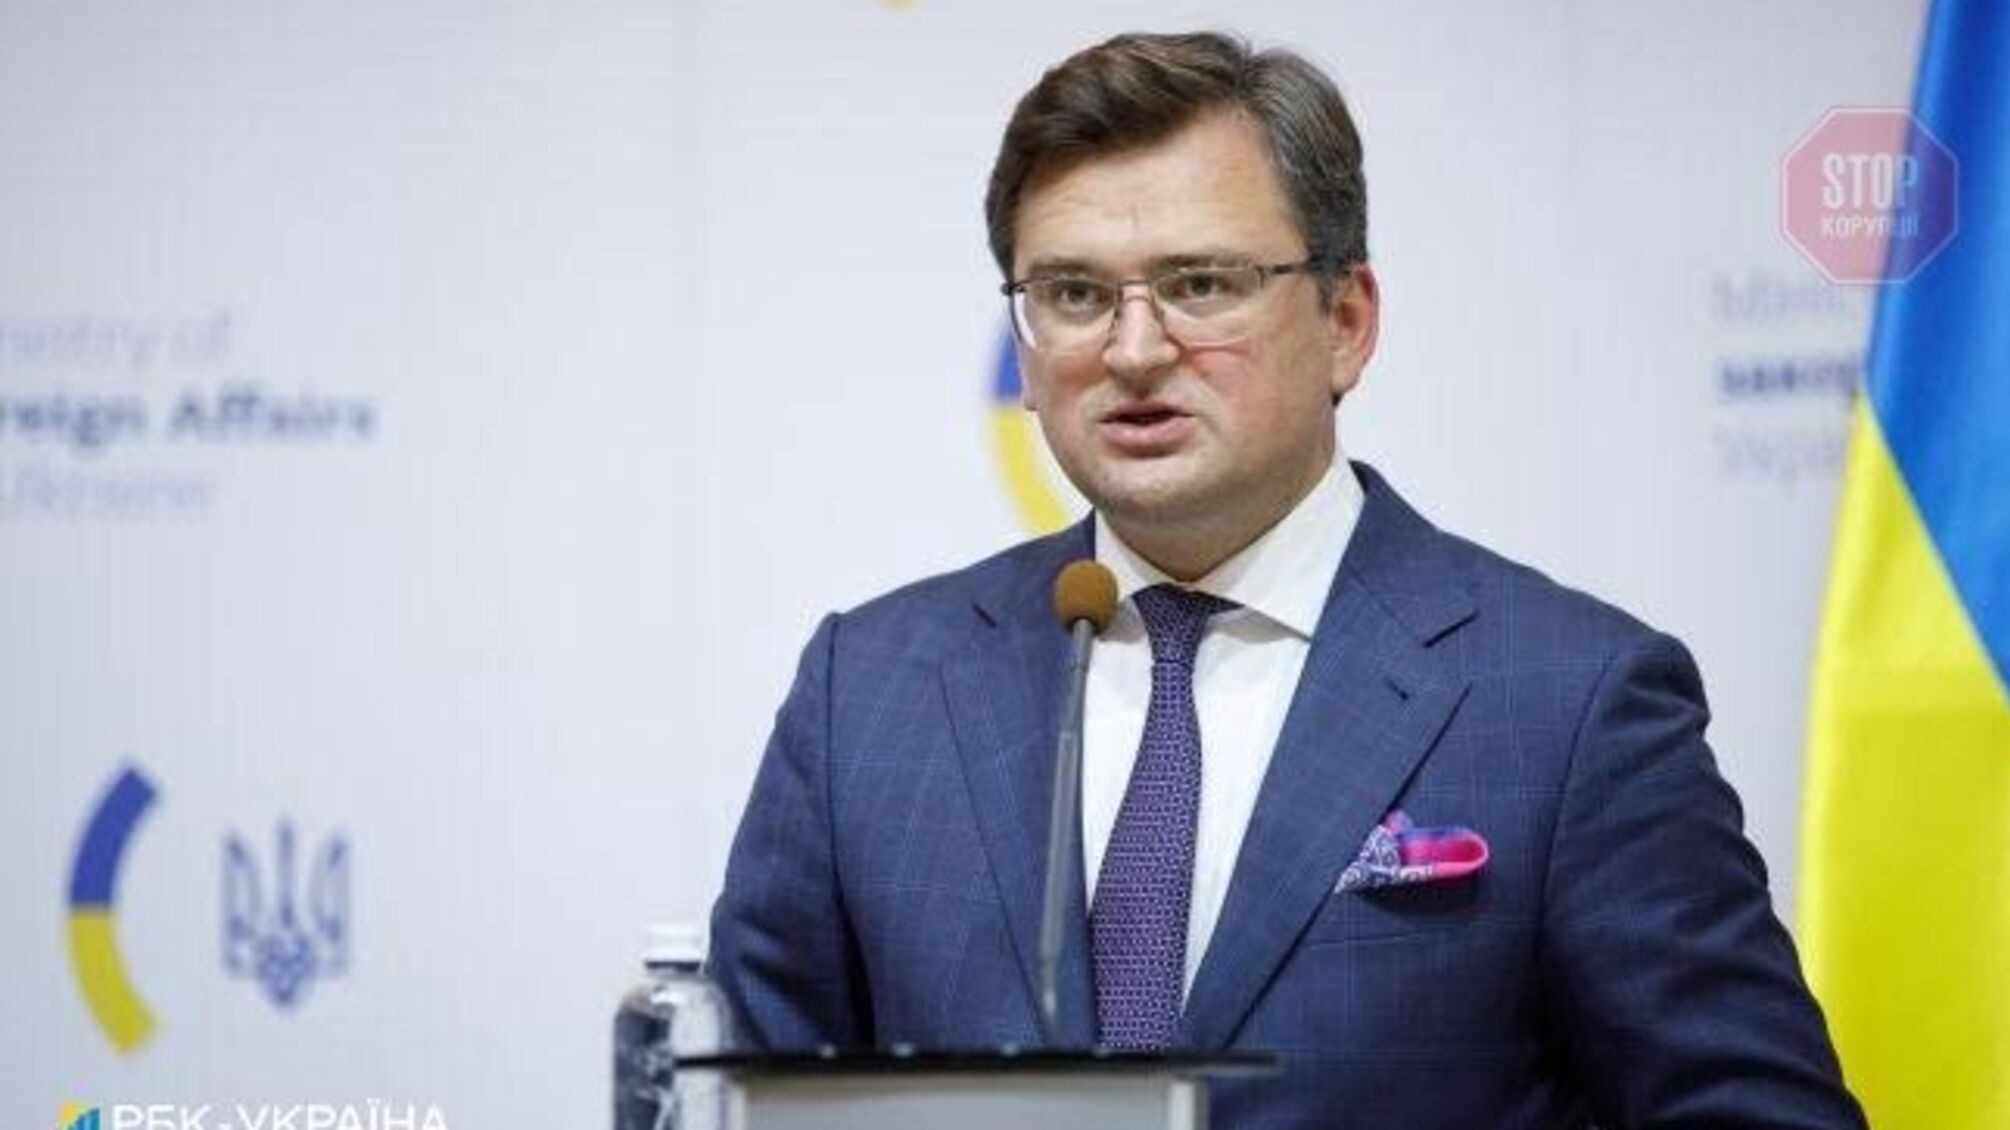 Министр иностранных дел: Вооруженным силам Украины запретили отвечать на провокации боевиков